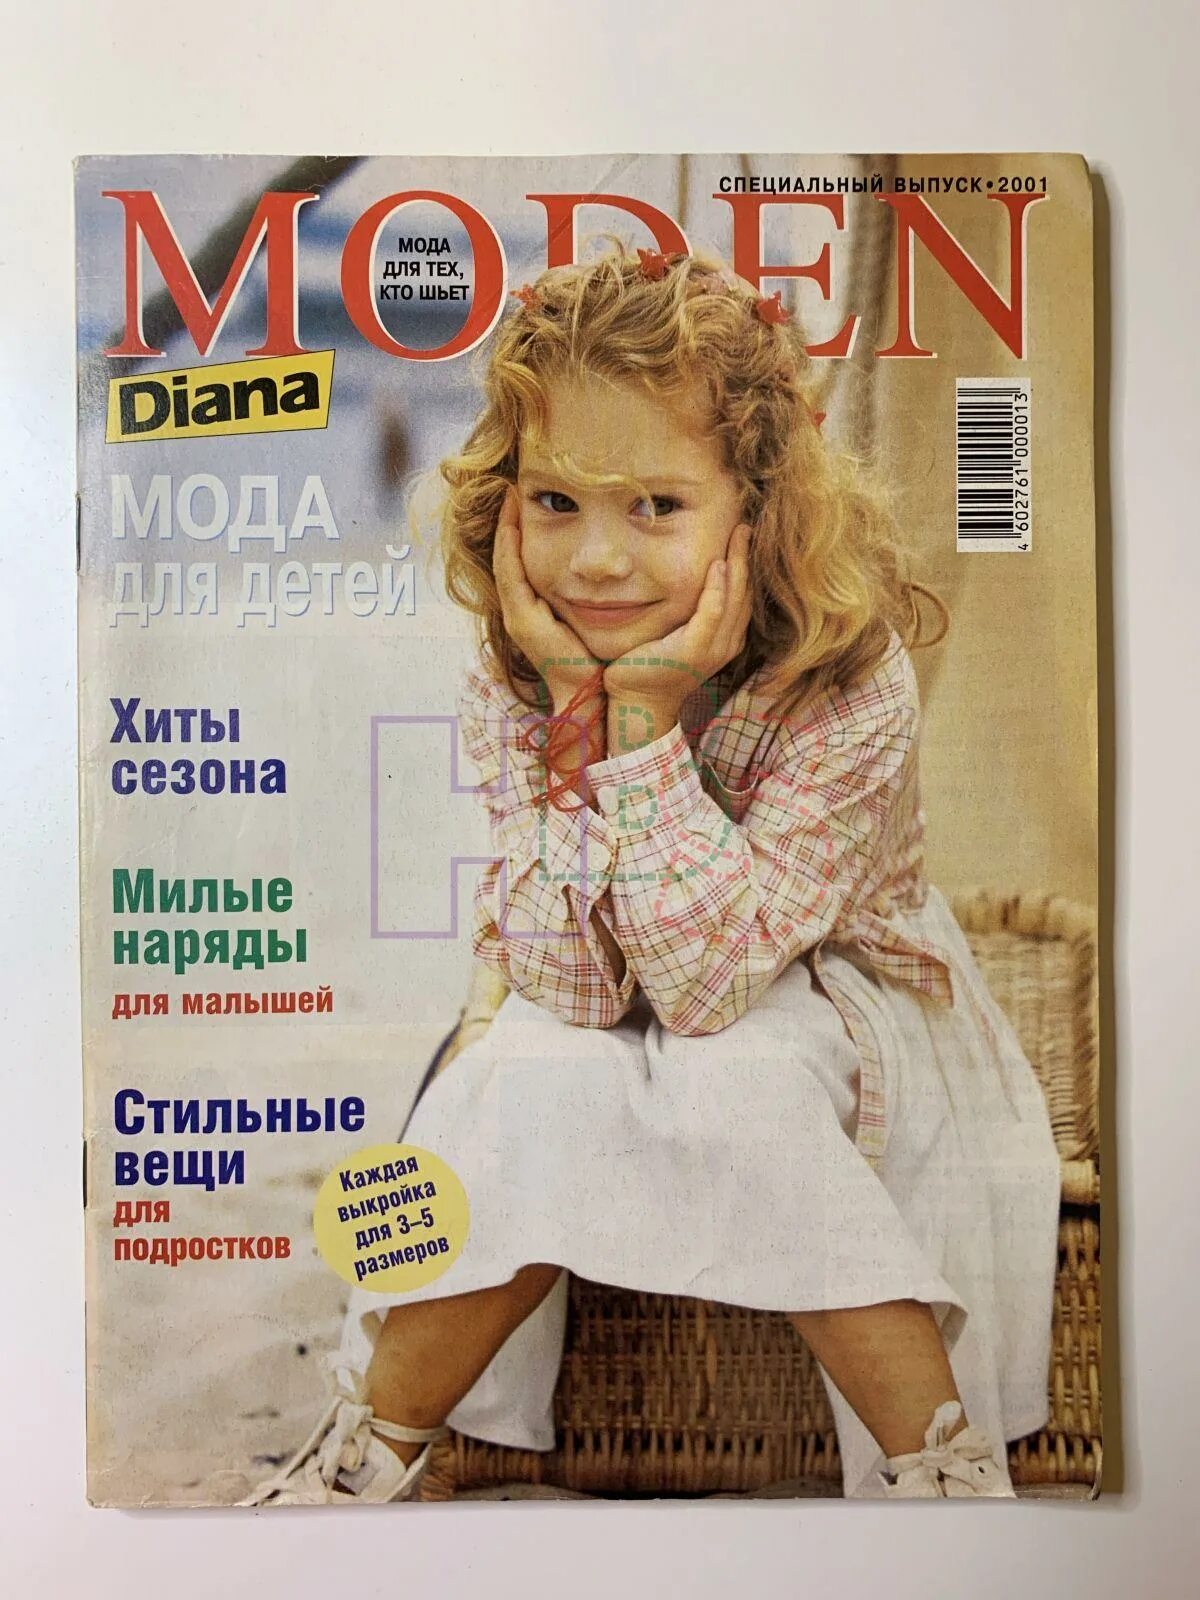 Специальный выпуск 1. Журнал Diana moden детский 2001. Журнал Diana moden детский 1999. Журнал Diana moden детский 2000. Diana moden 2005 мода для детей.